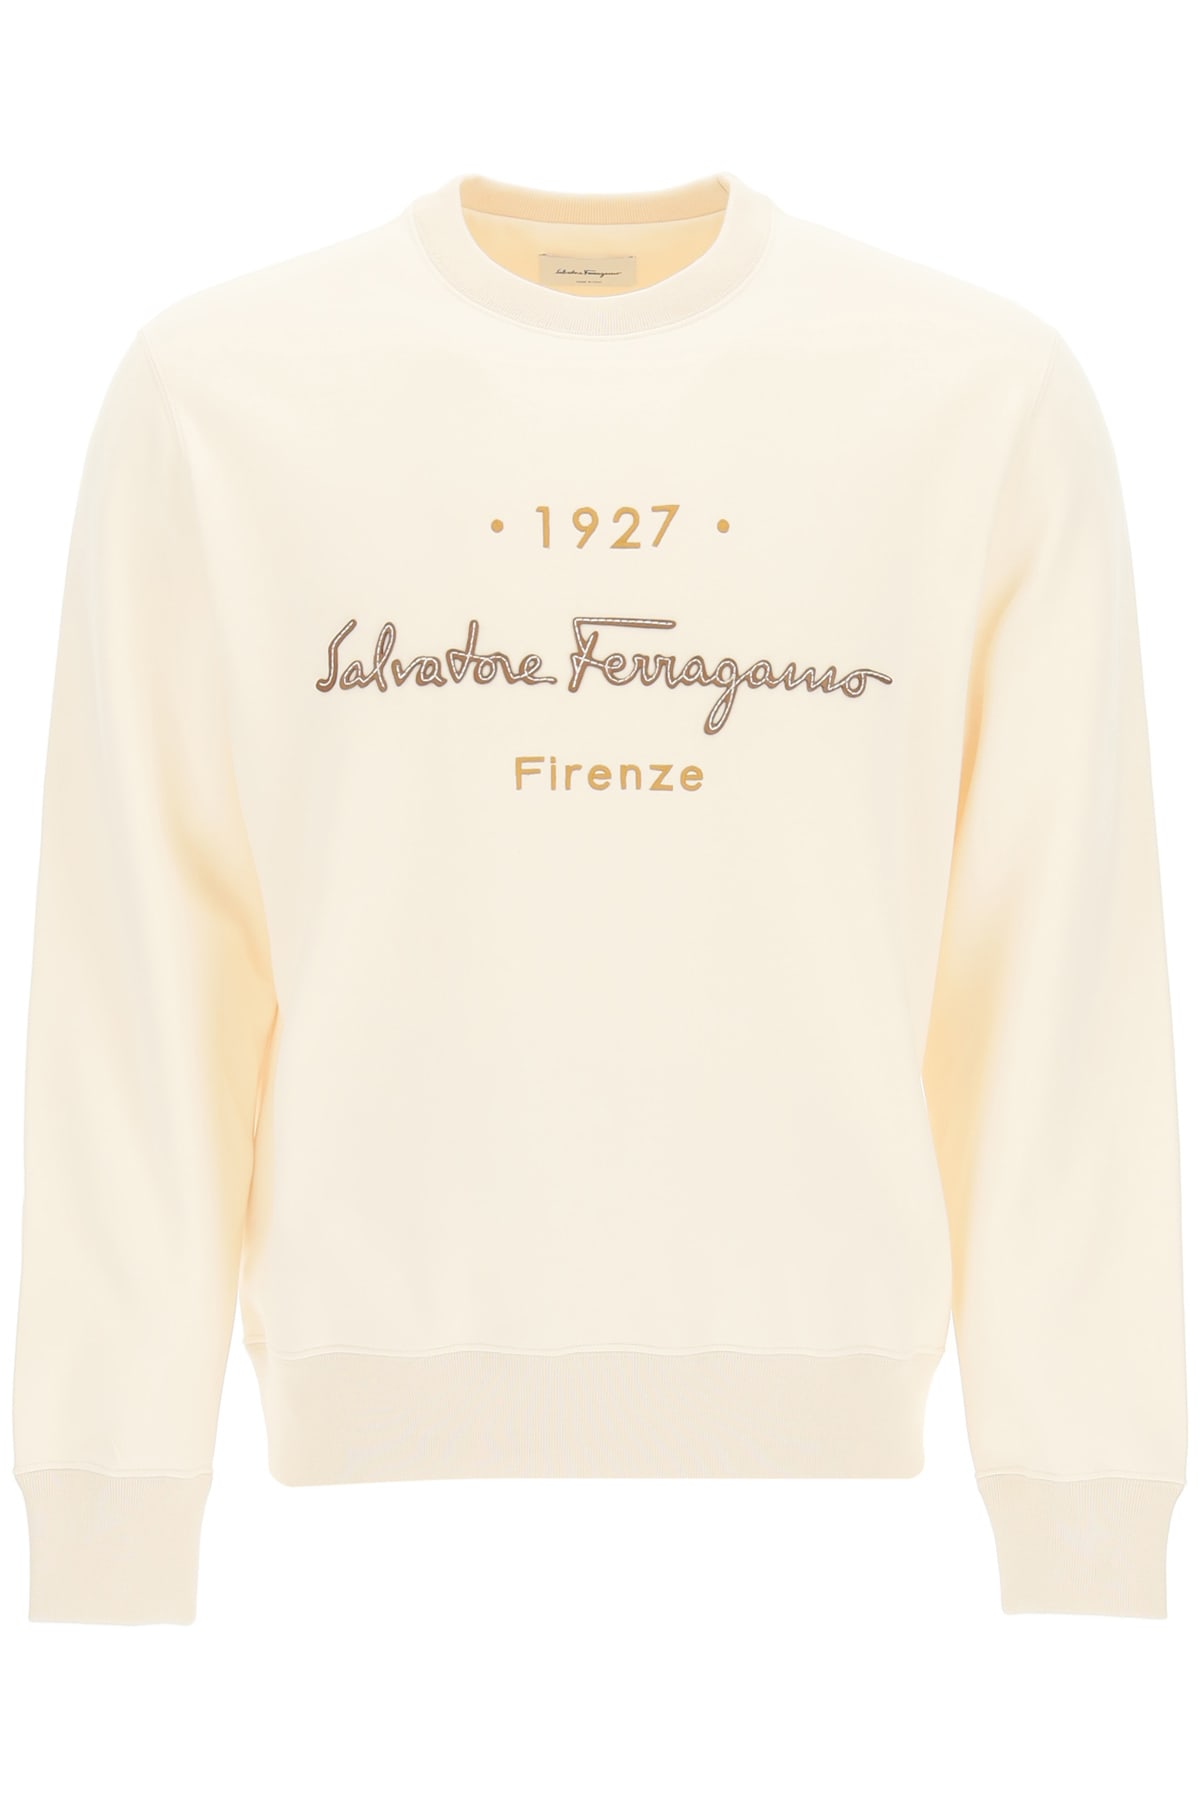 Salvatore Ferragamo 1927 Signature Crewneck Sweatshirt